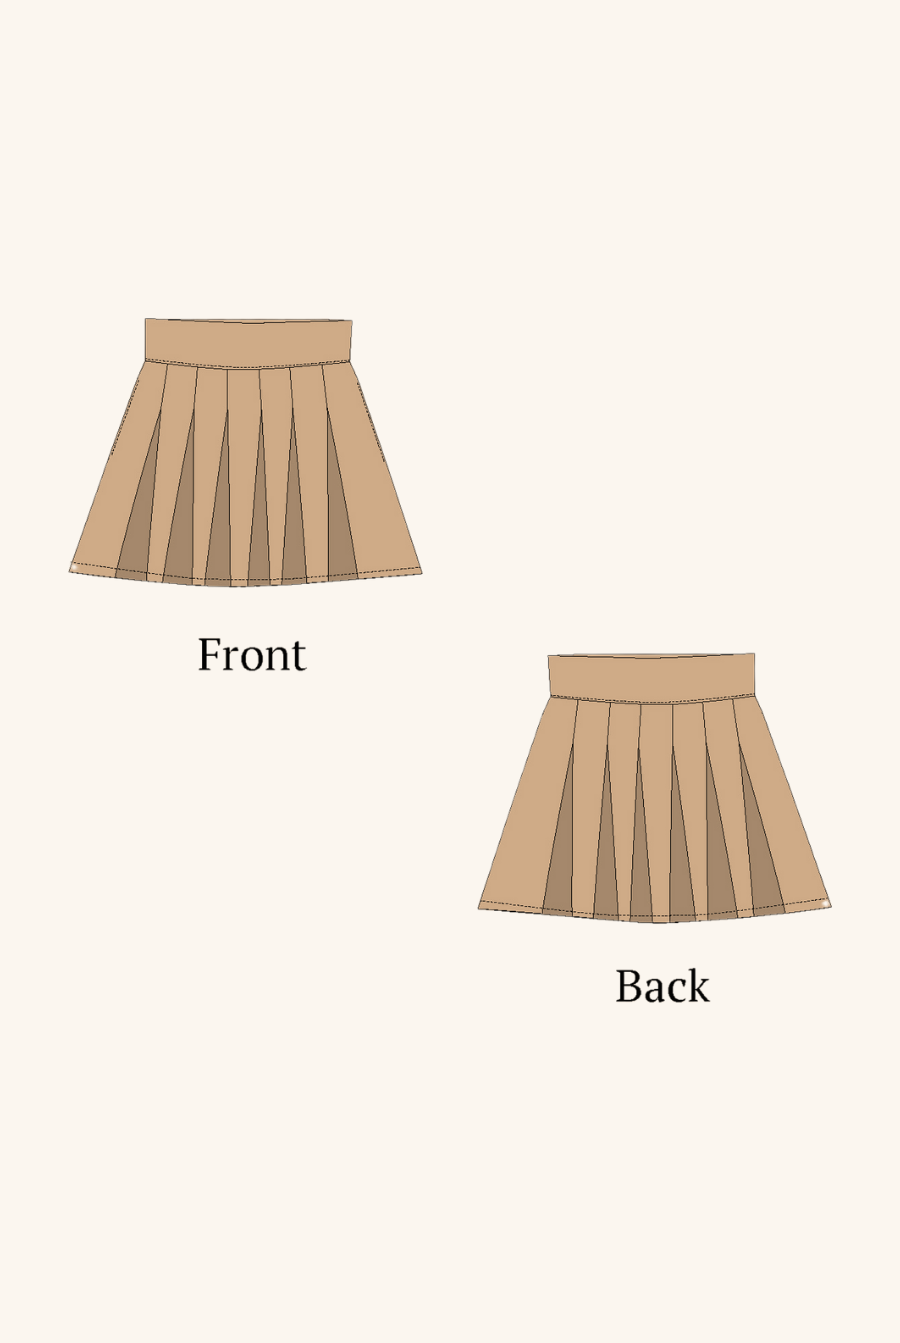 2d sketch of box pleat mini skirt